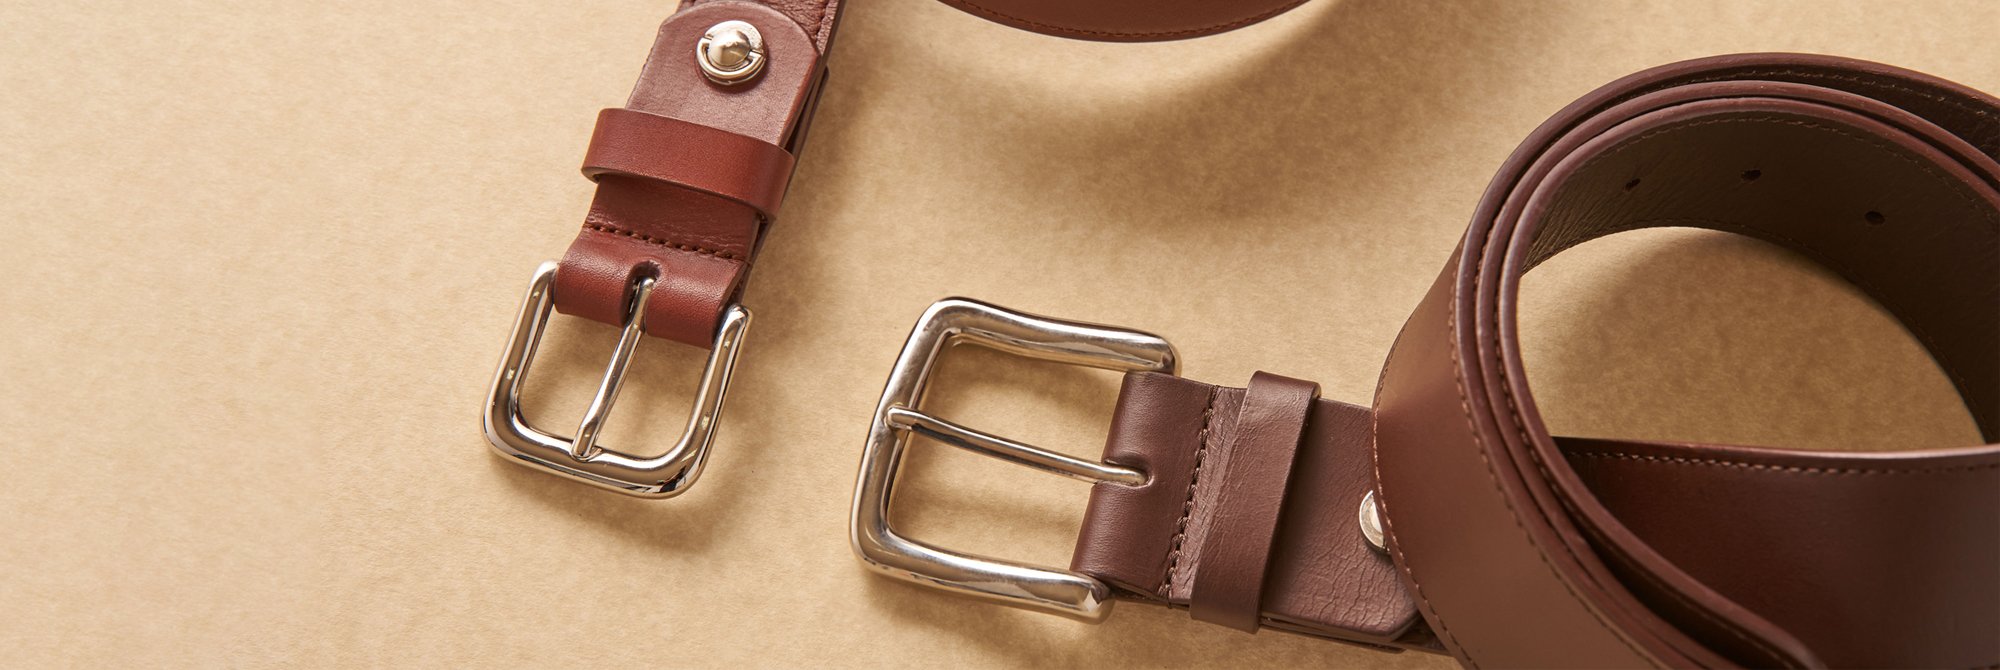 Elegant leather belts